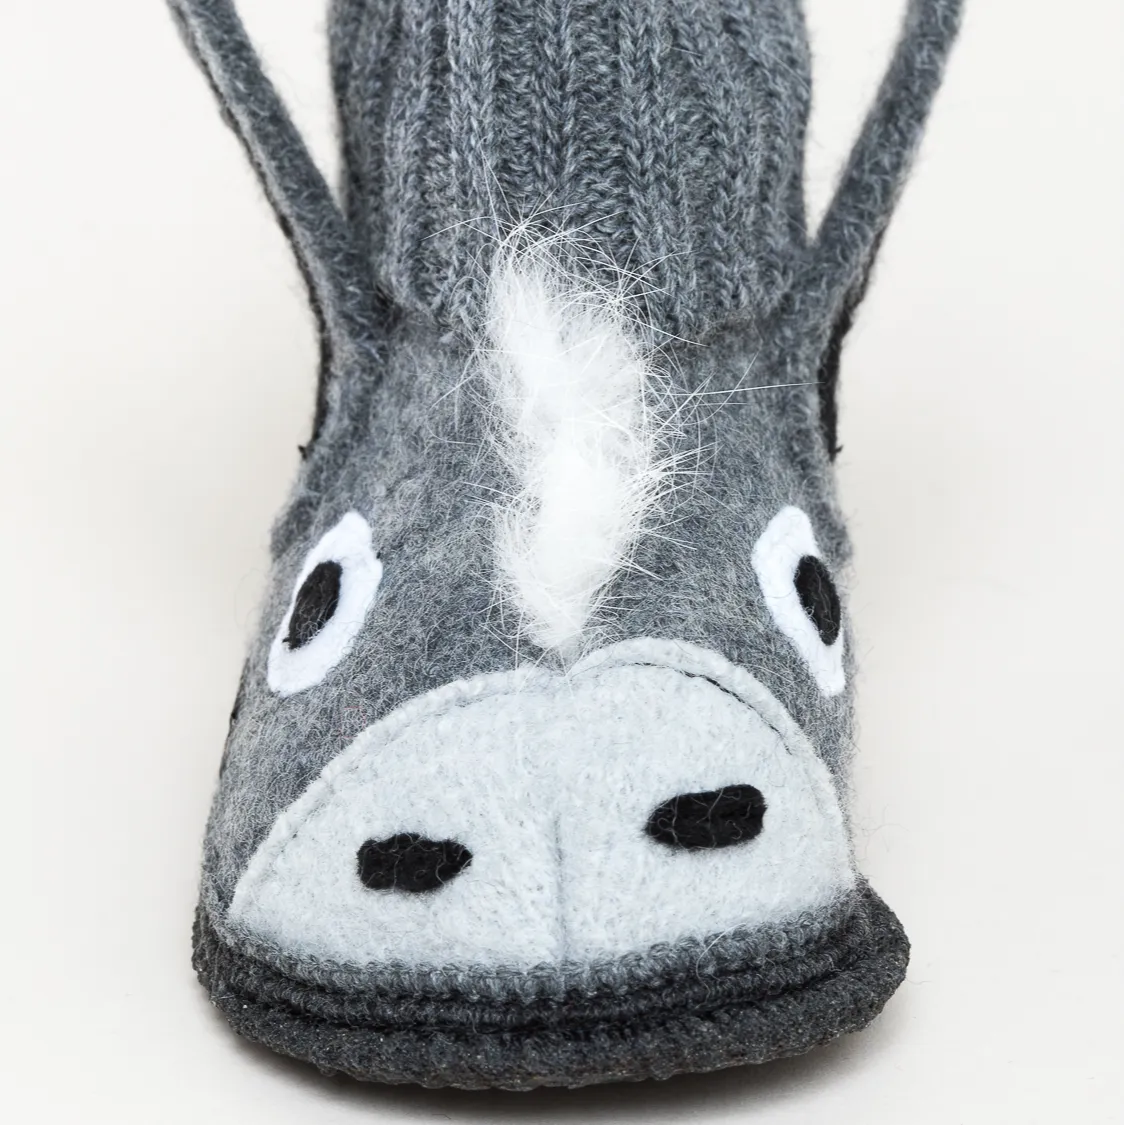 Donkey Slipper Socks